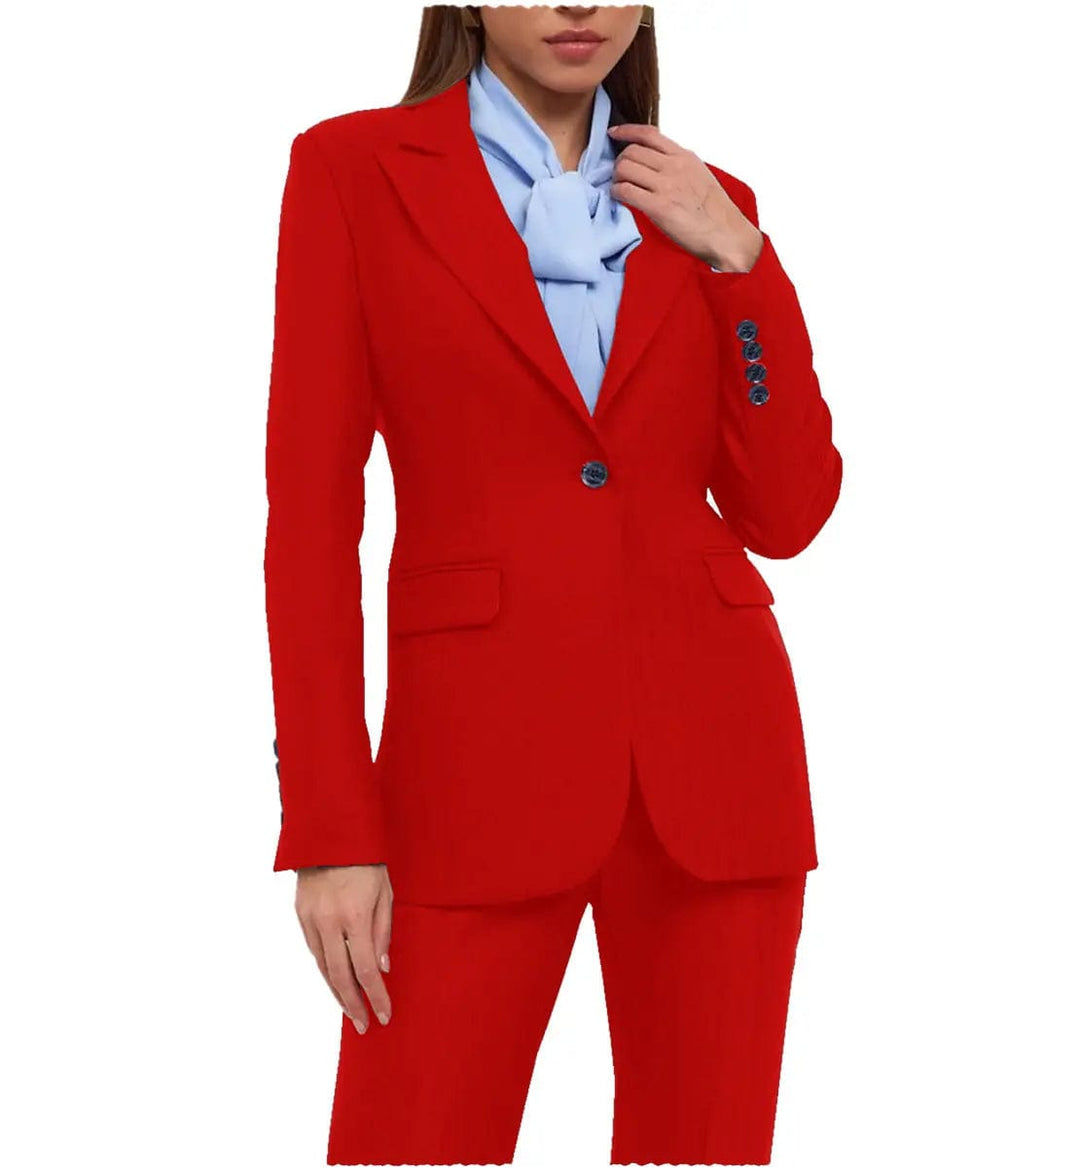 solovedress Formal Peak Lapel Single Buttons 2 Pieces Women Suit